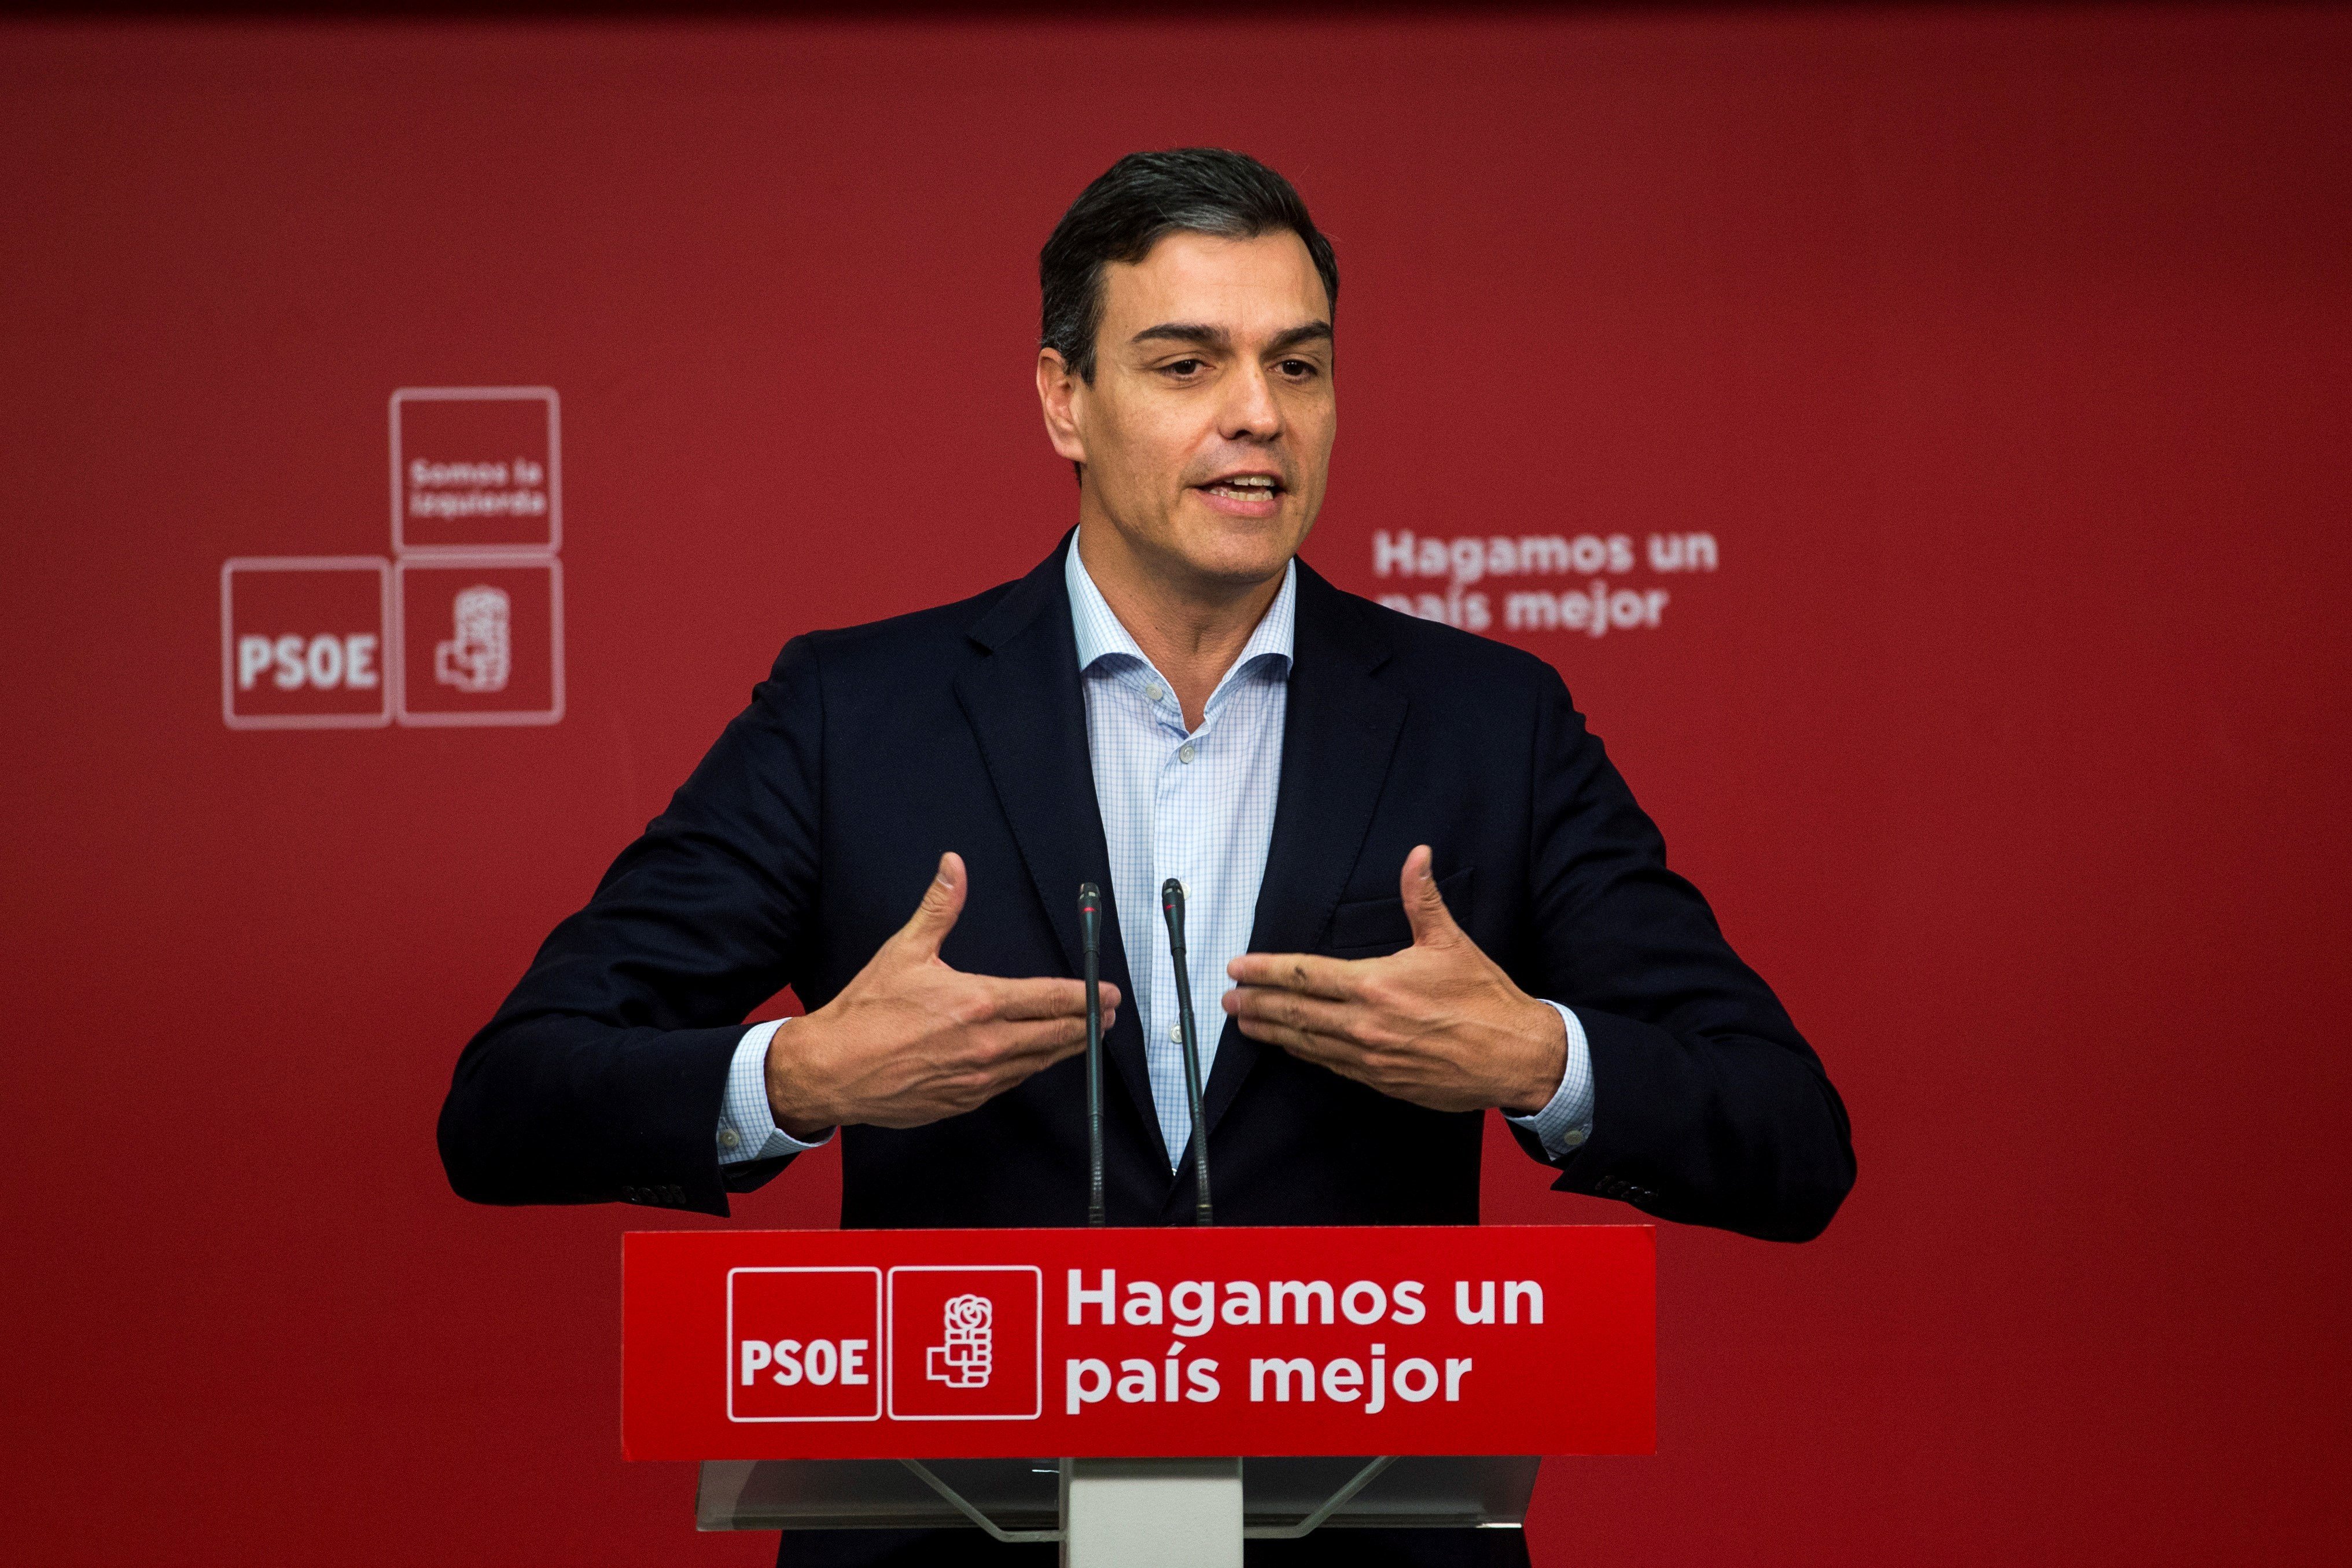 Pedro Sánchez compara a Torra con Vox y propone sancionar políticos "racistas"